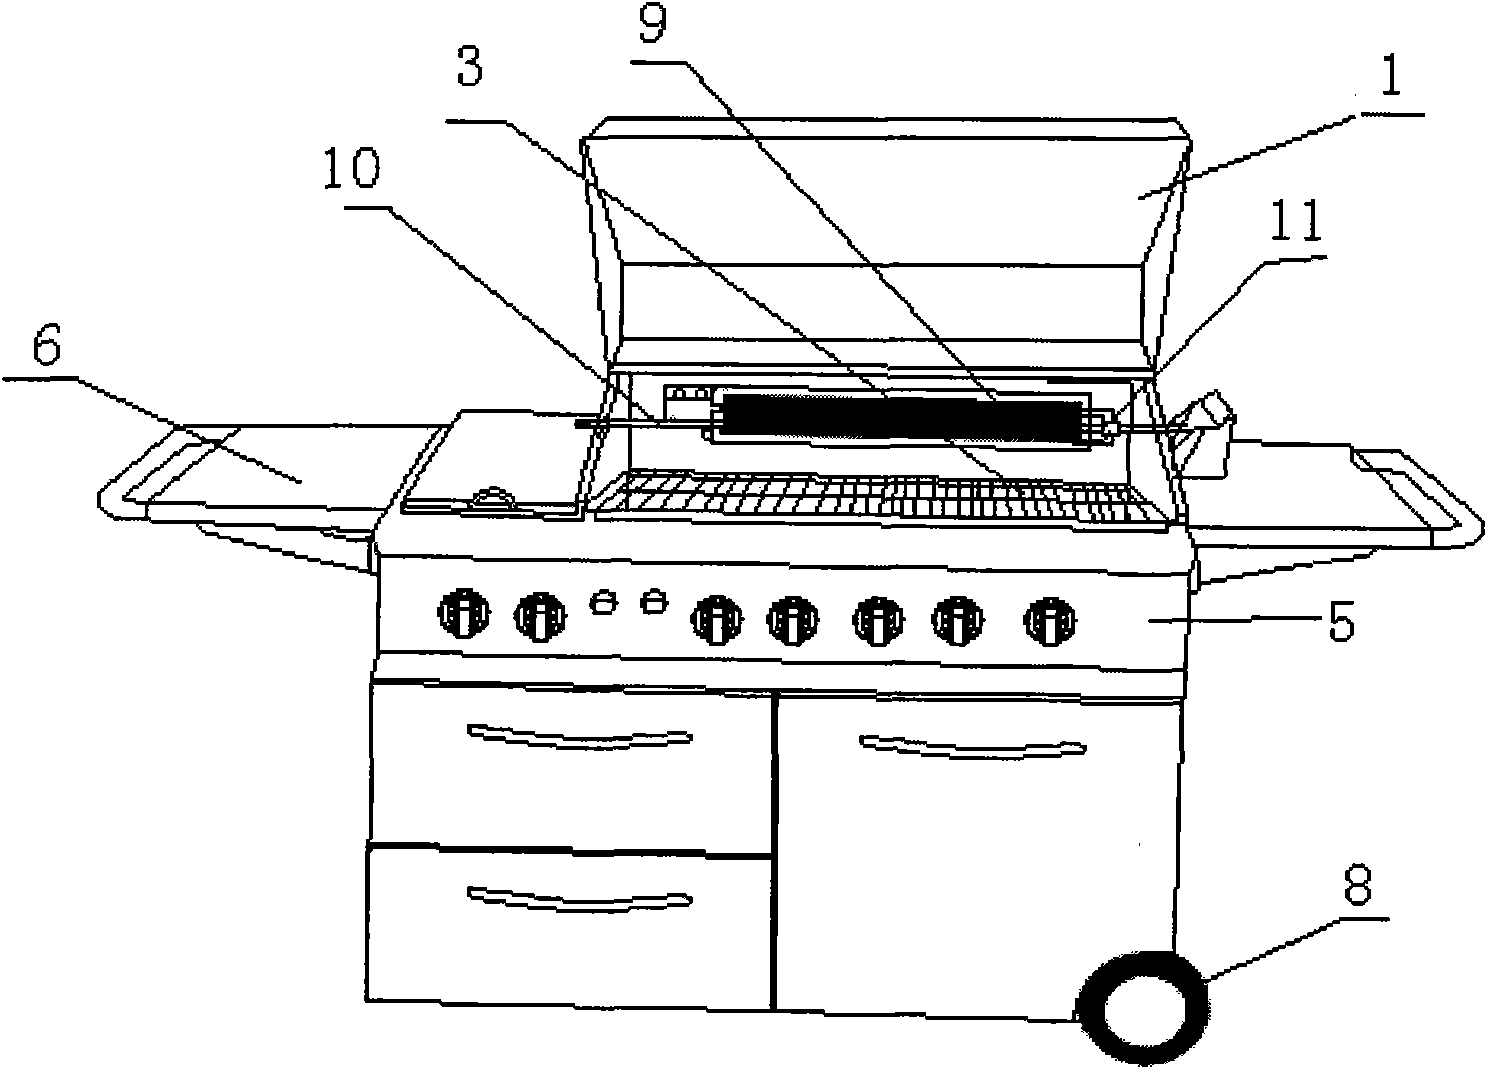 Novel gas-fired roasting oven